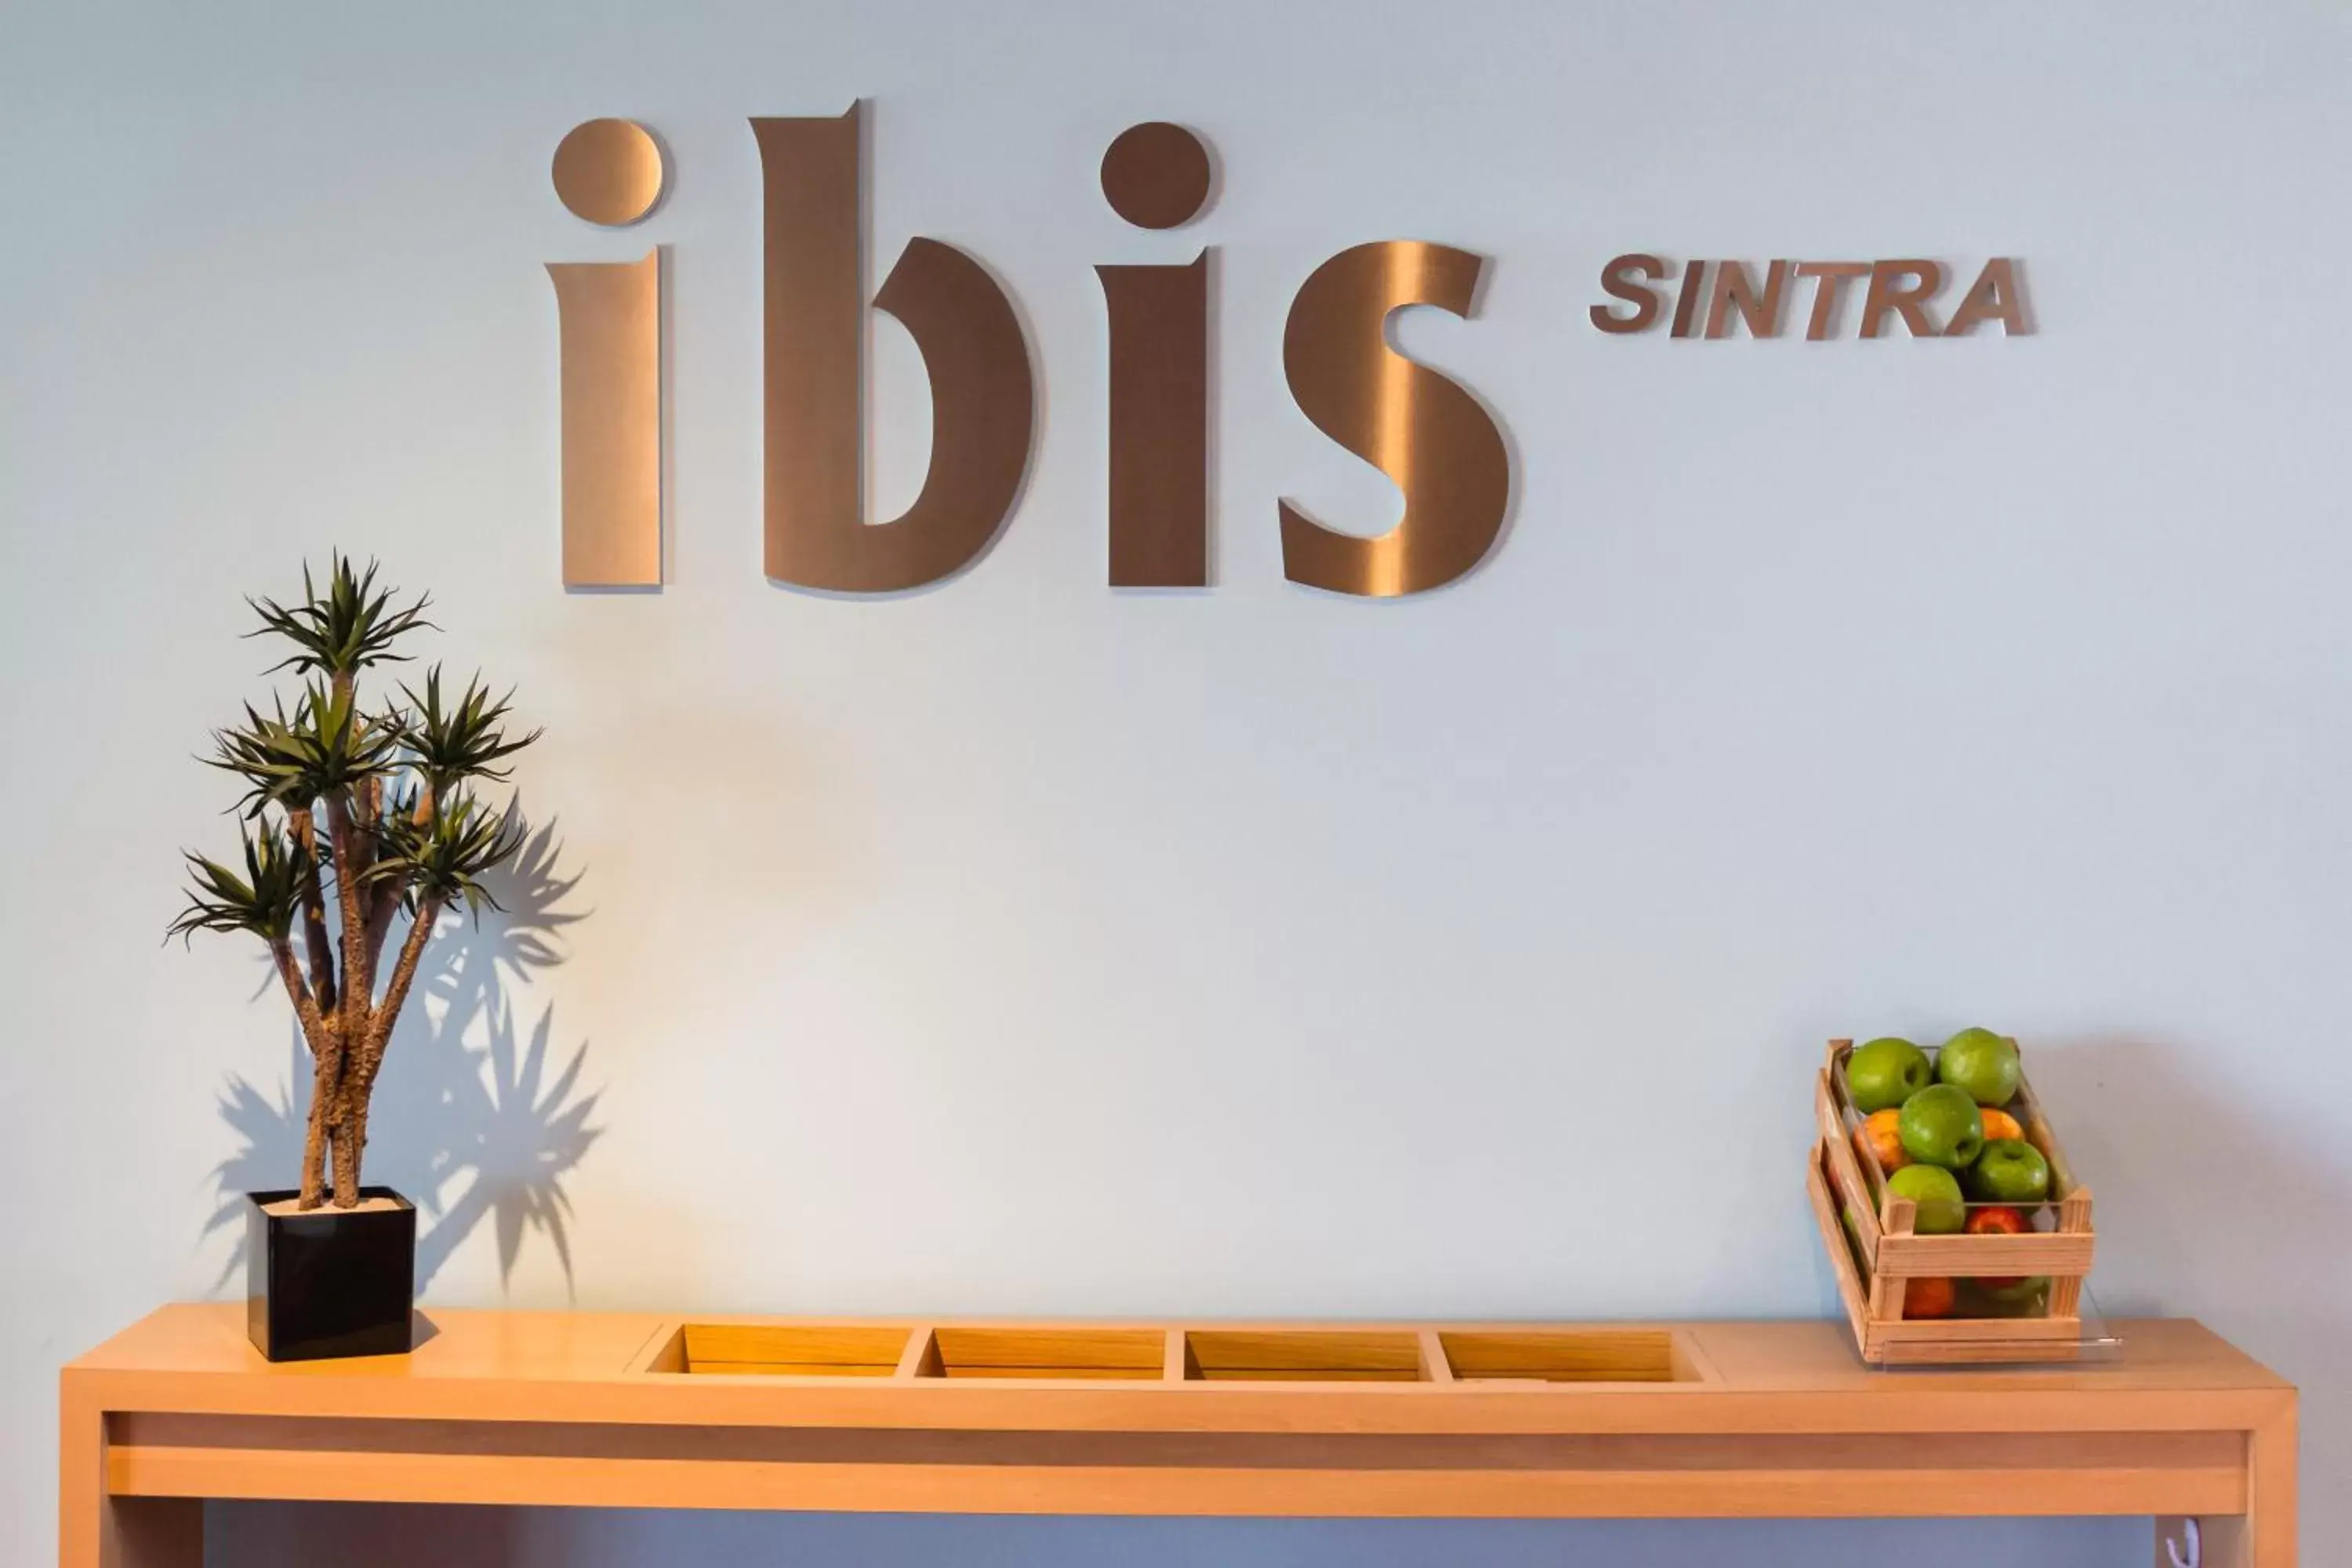 Lobby or reception in Hotel Ibis Lisboa Sintra